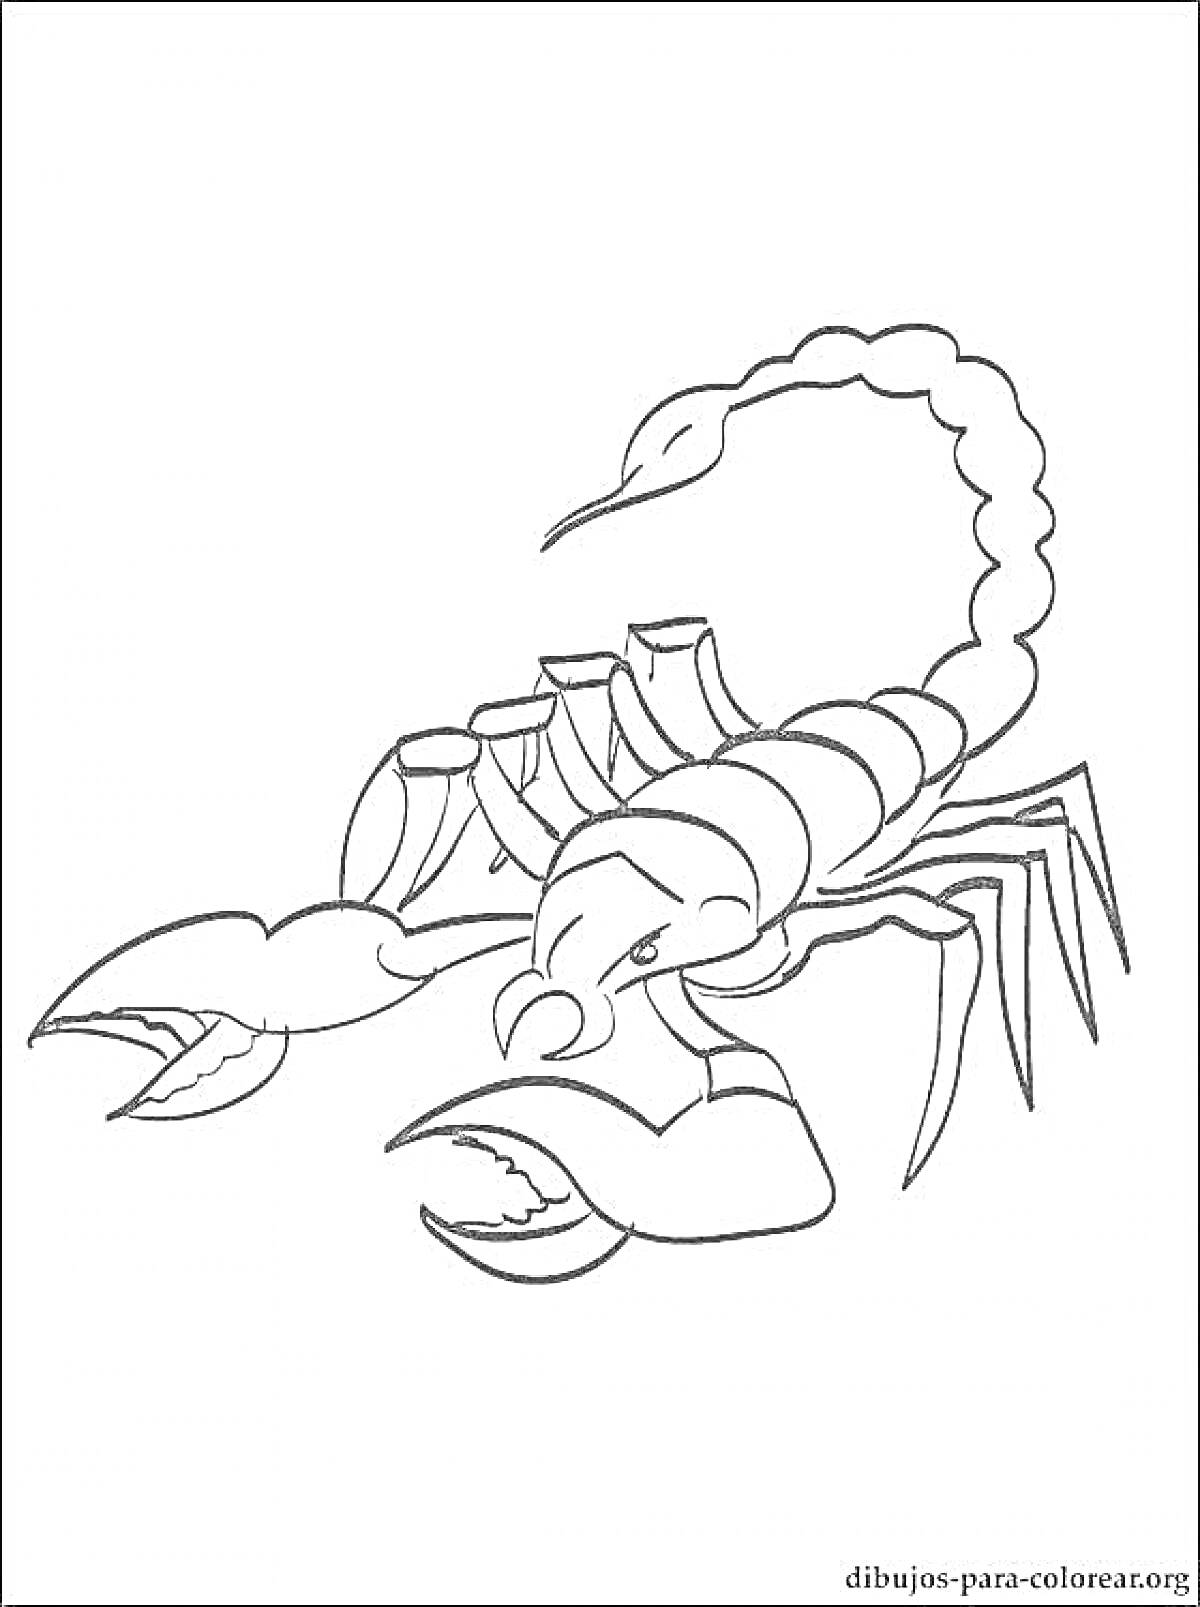 Раскраска Скорпион с поднятым хвостом и клешнями